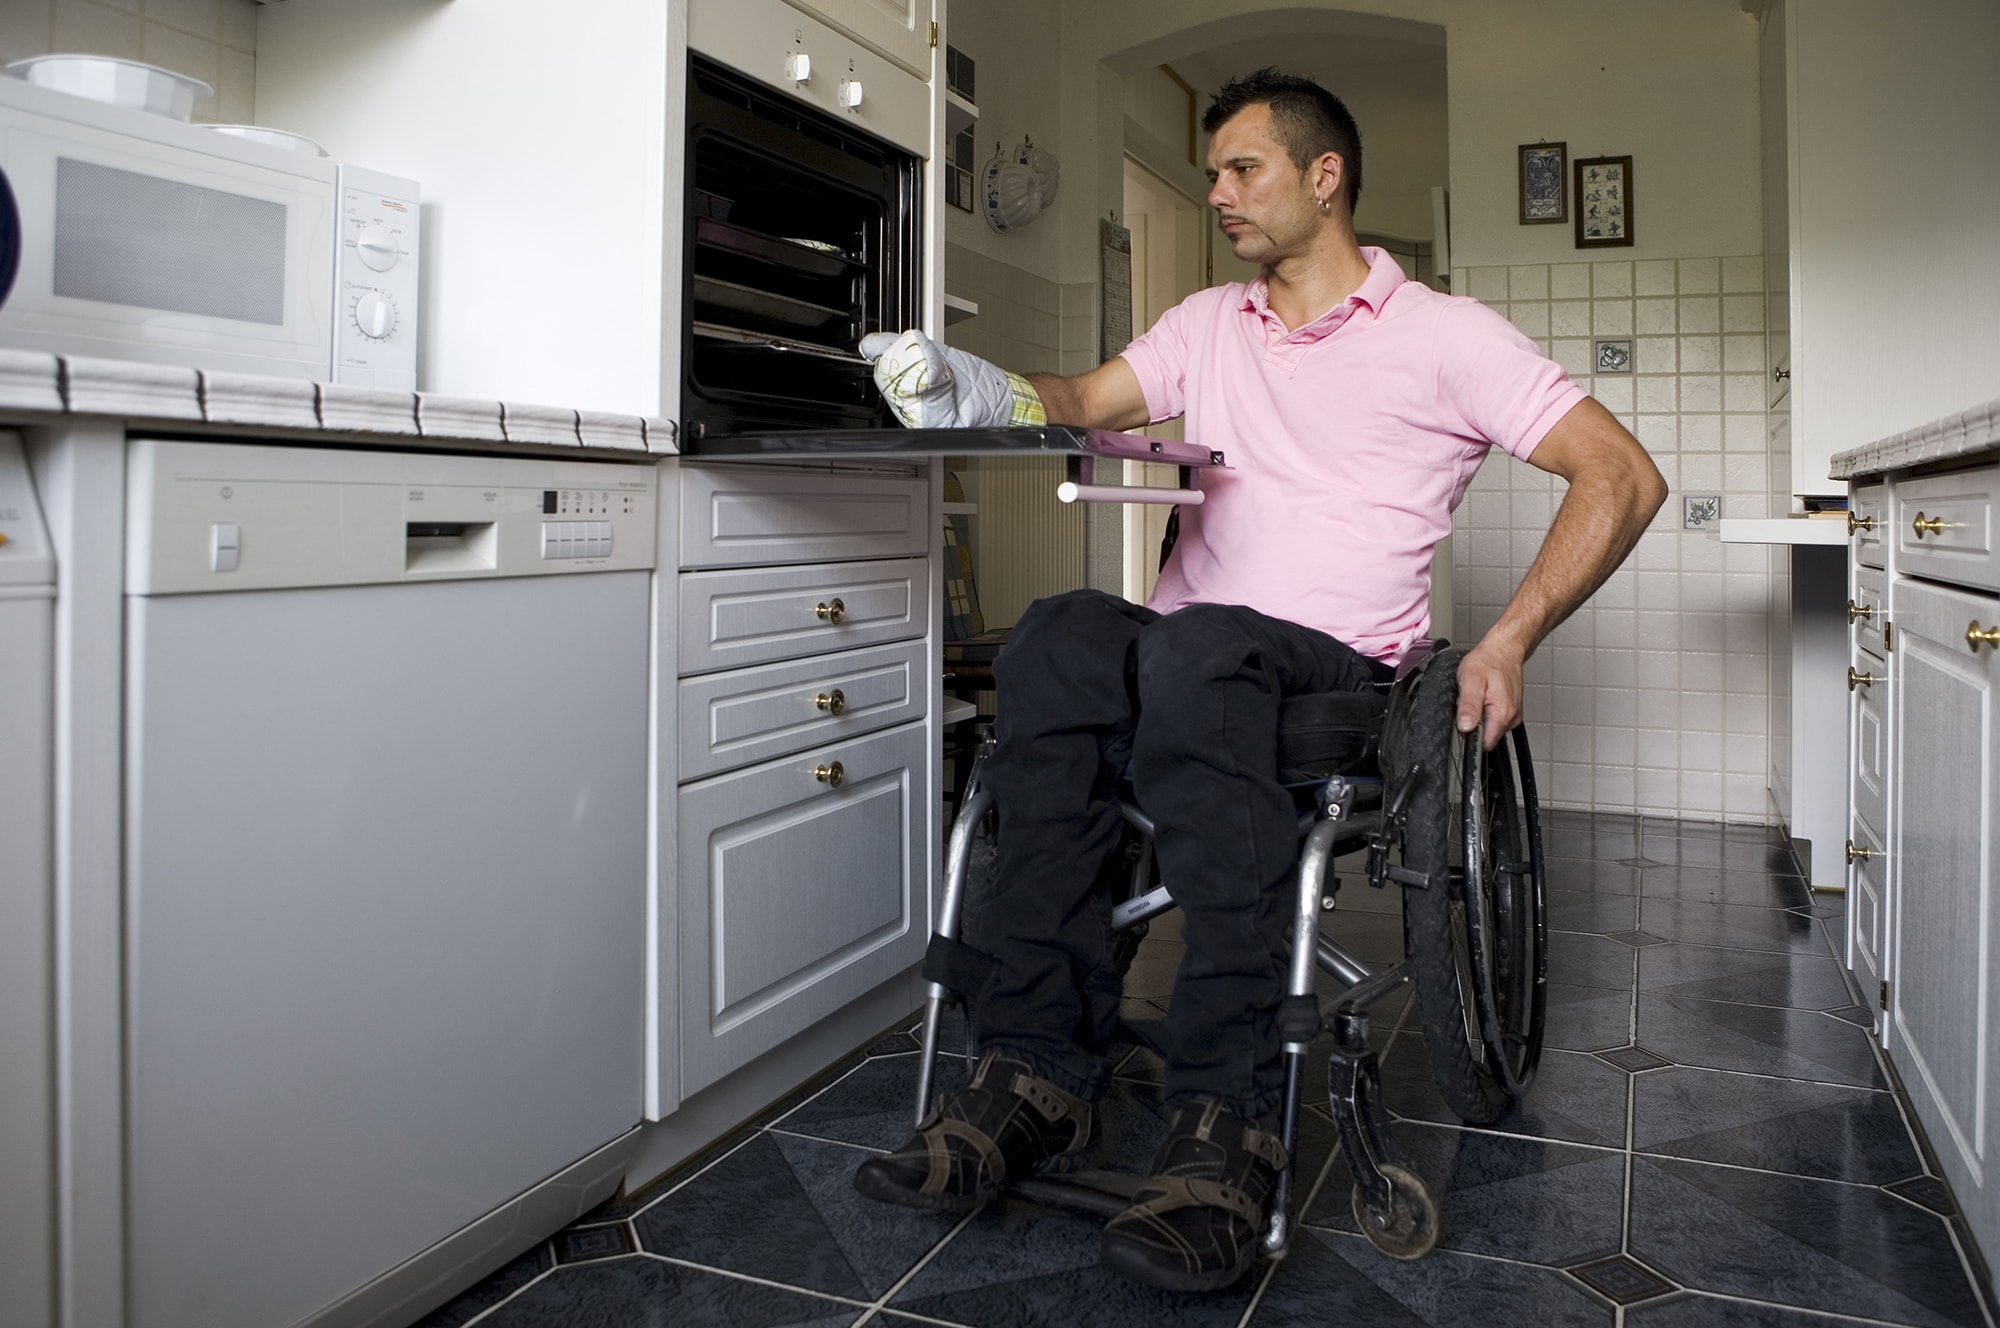 Жилье для инвалидов 1 группы. Кухня для инвалида колясочника. Кухня для людей с ограниченными возможностями. Квартира для инвалида колясочника. Инвалид в быту.